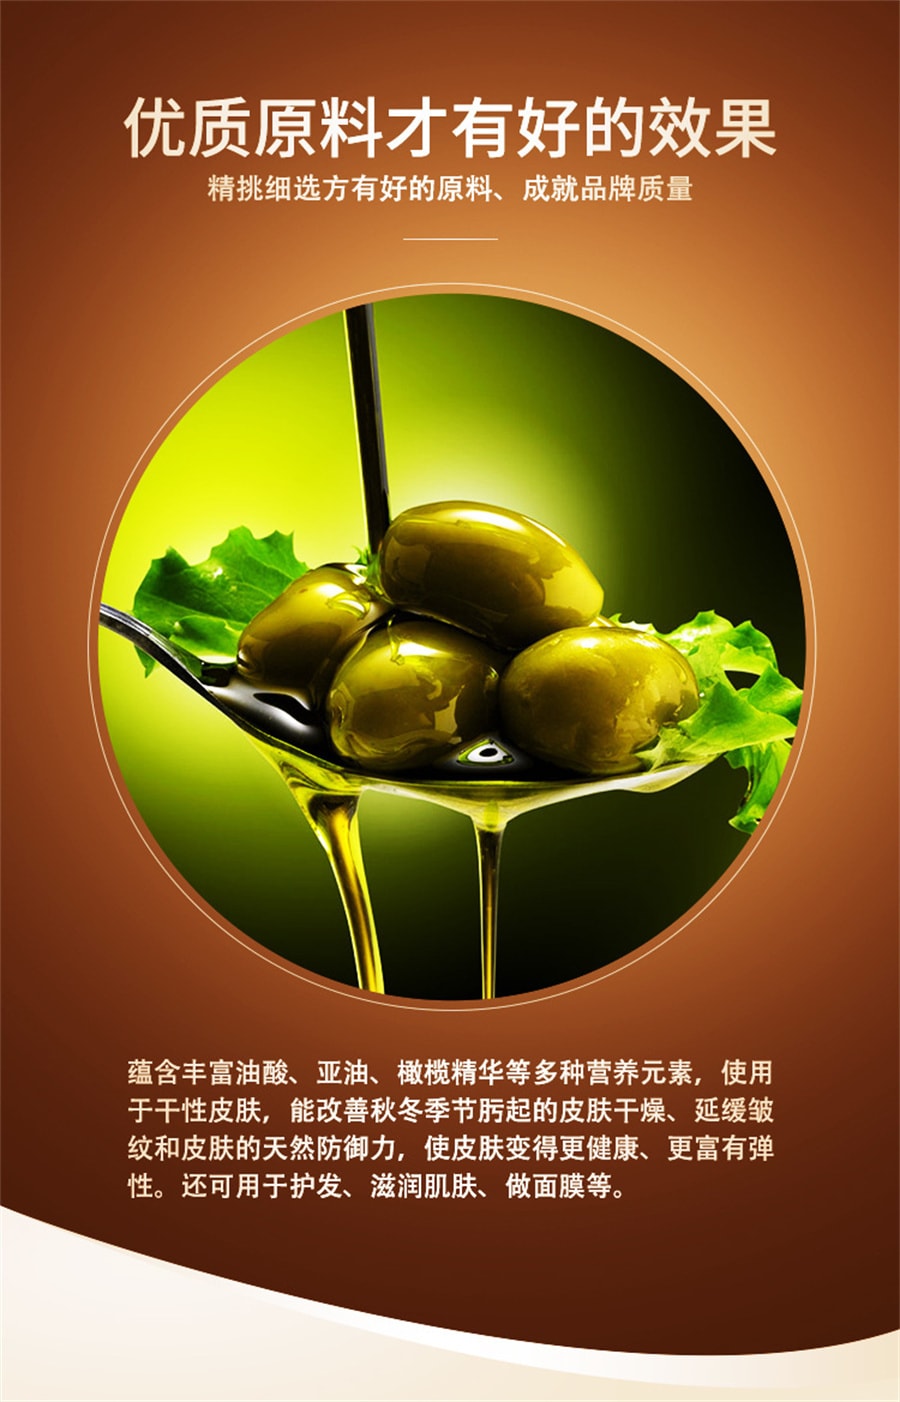 【中国直邮】可乐生活Cokelife 橄榄按摩滋润保湿温和夫妻房事润滑情趣用品润滑  300ml/瓶